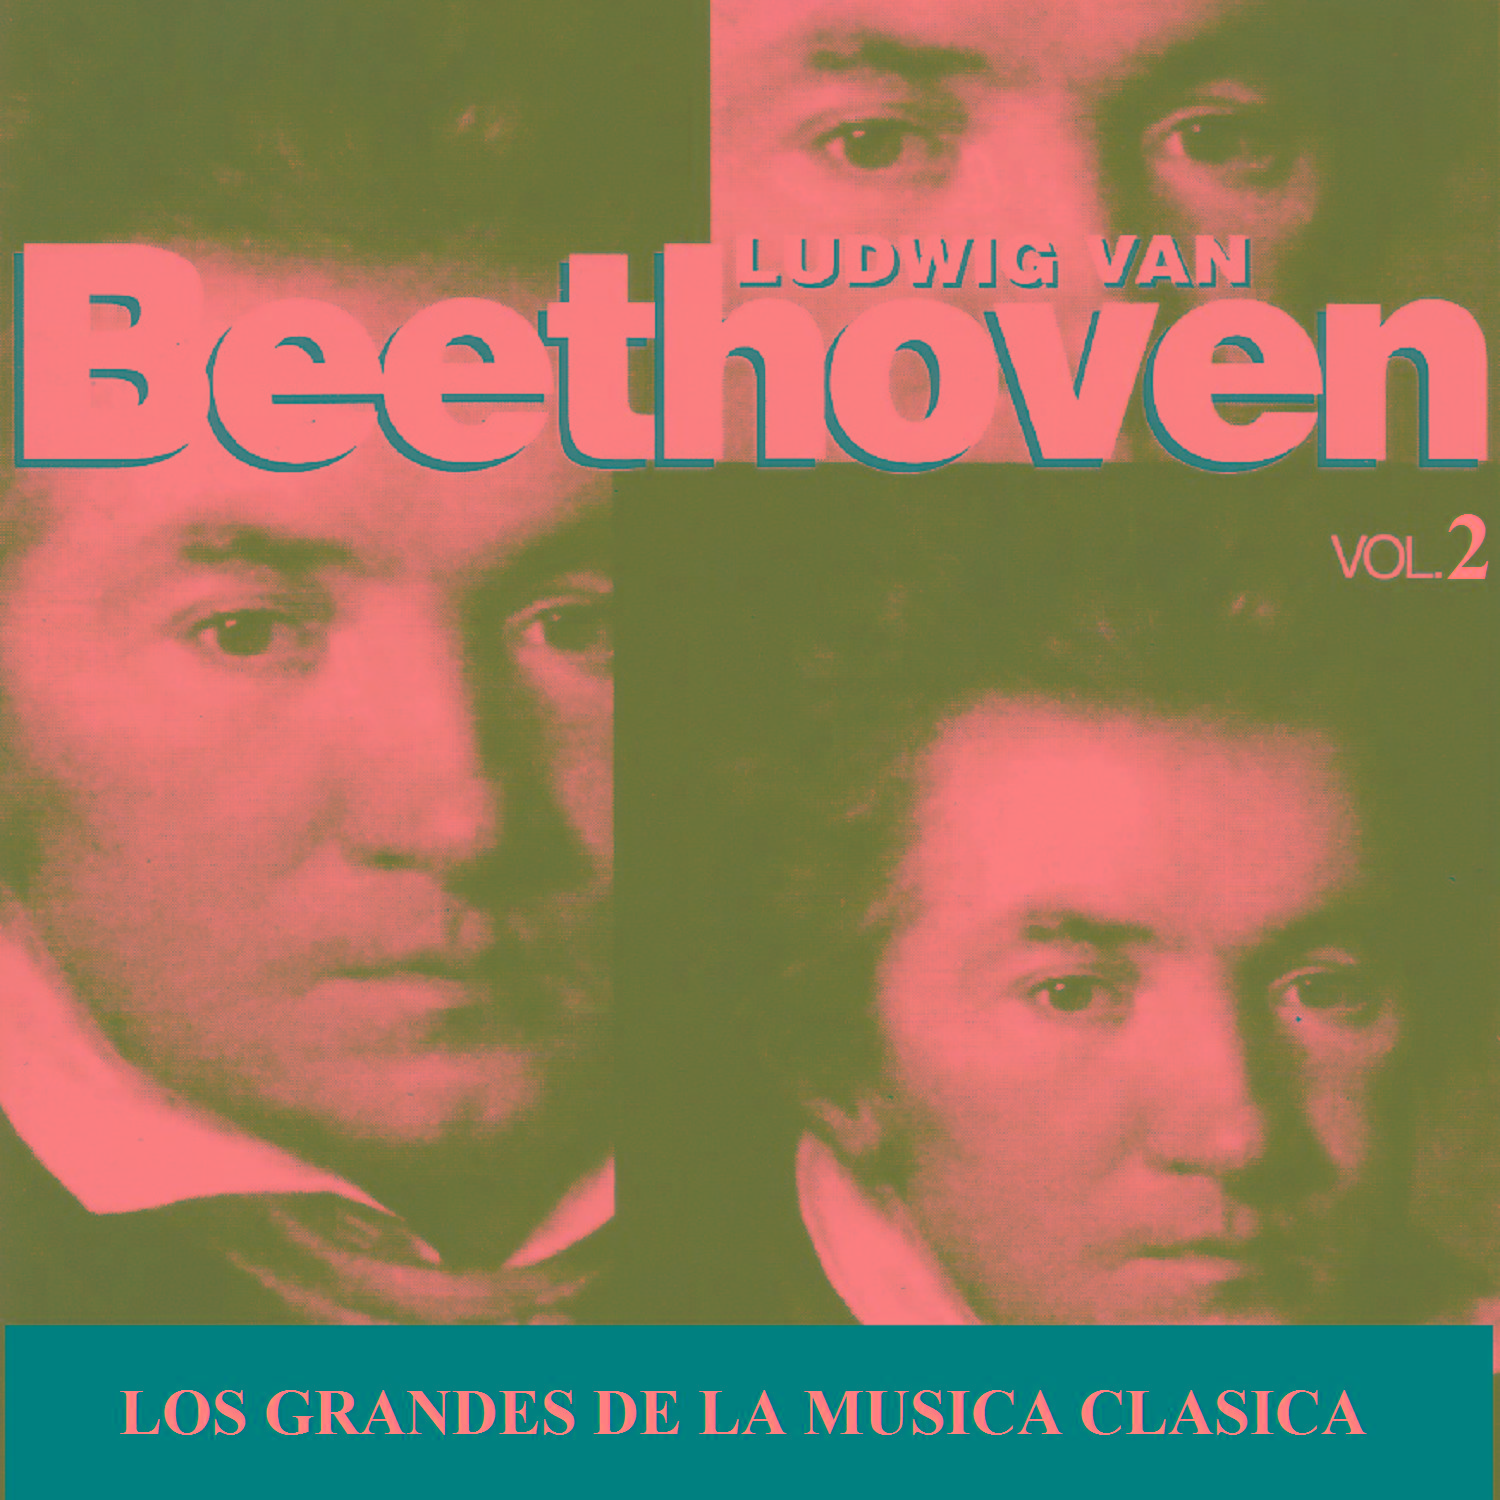 Los Grandes de la Musica Clasica - Ludwig van Beethoven Vol. 2